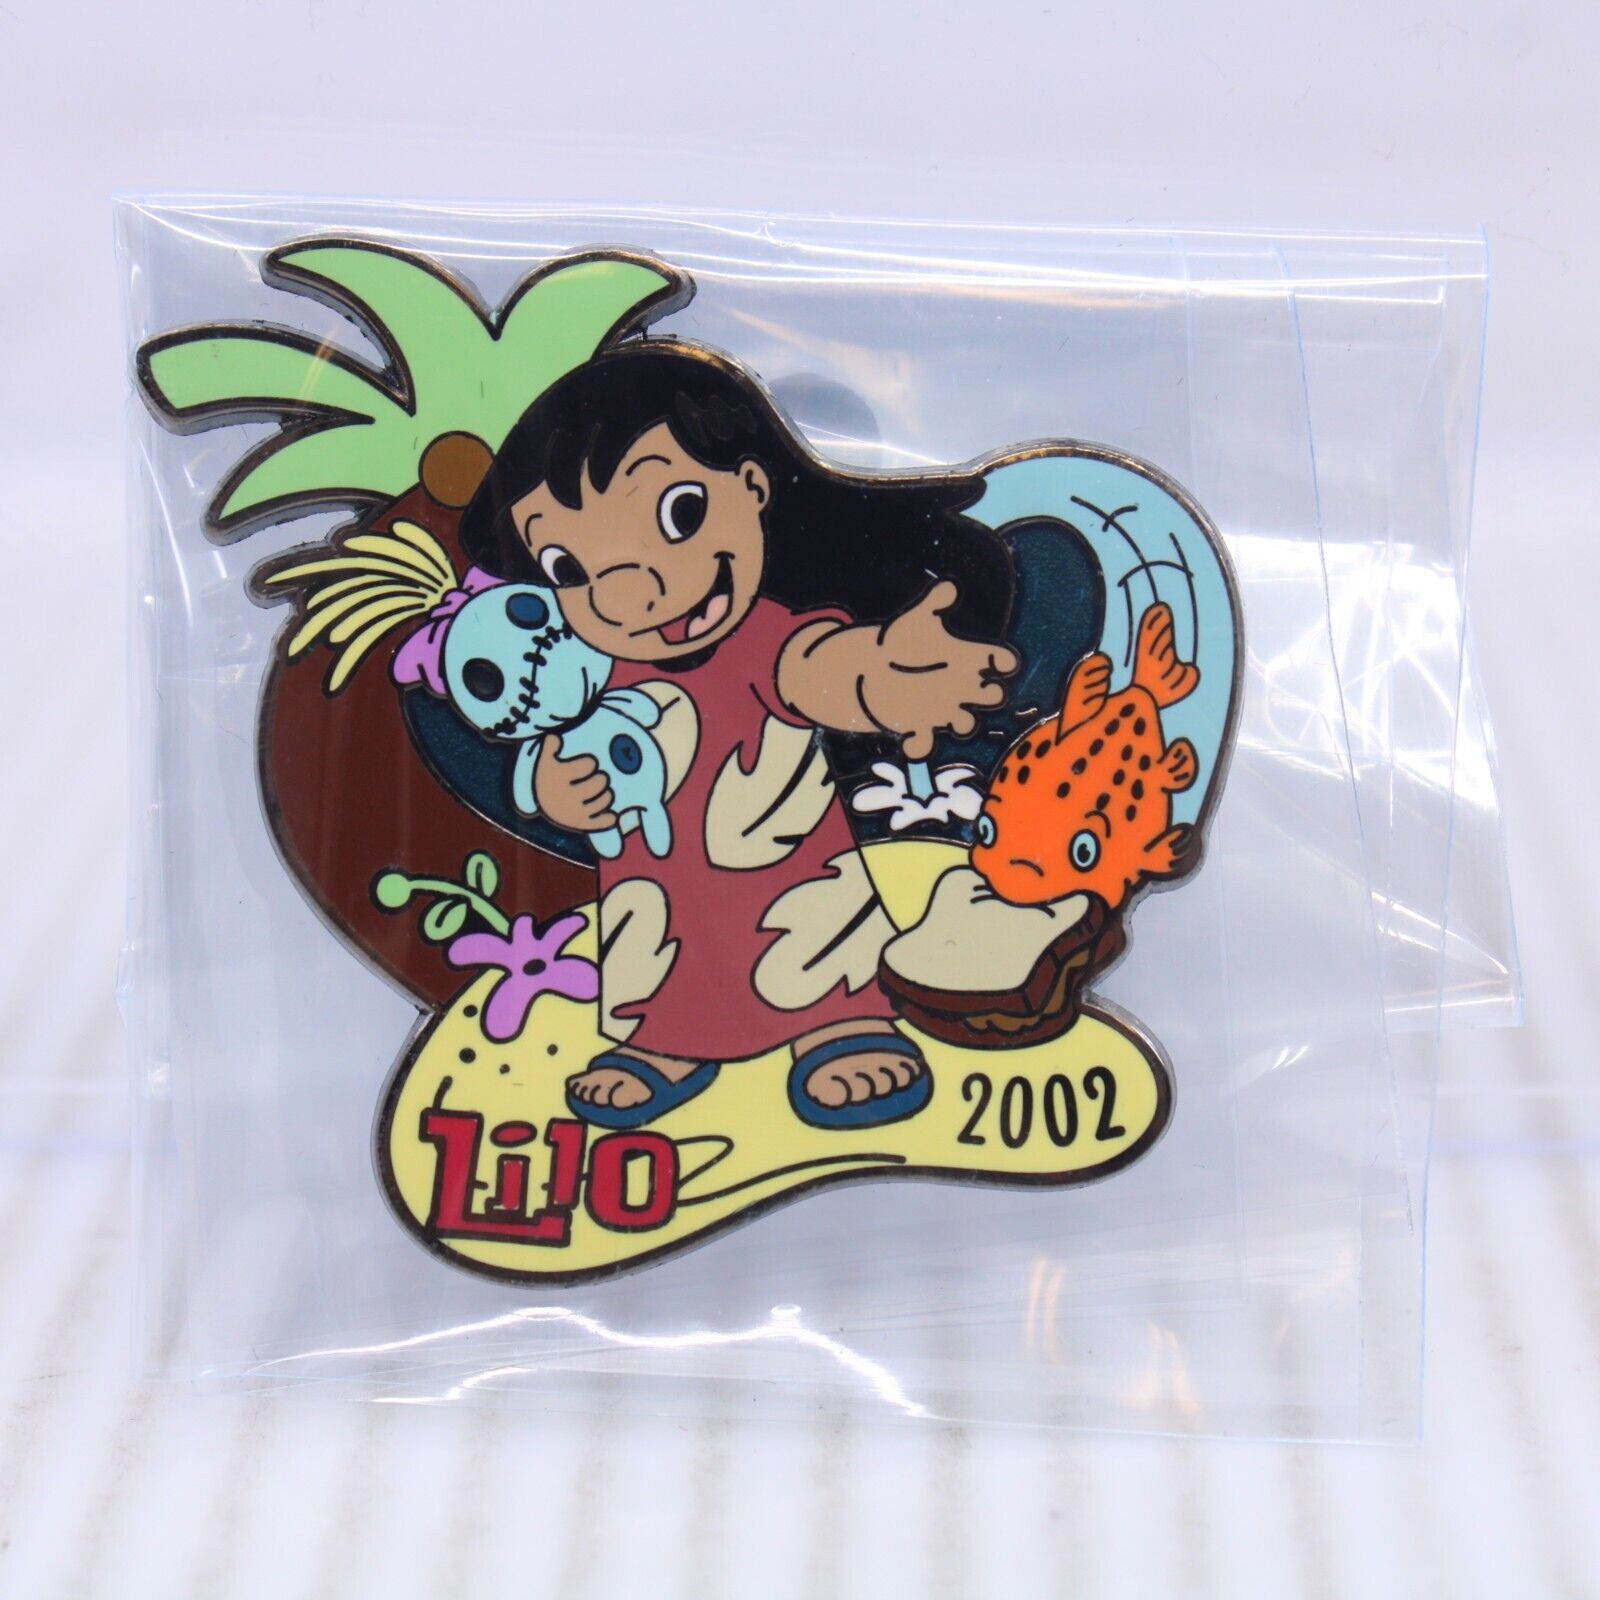 B5 Willabee & Ward Disney Pin Collection #13 2002 Lilo and Stitch Scrump Pudge